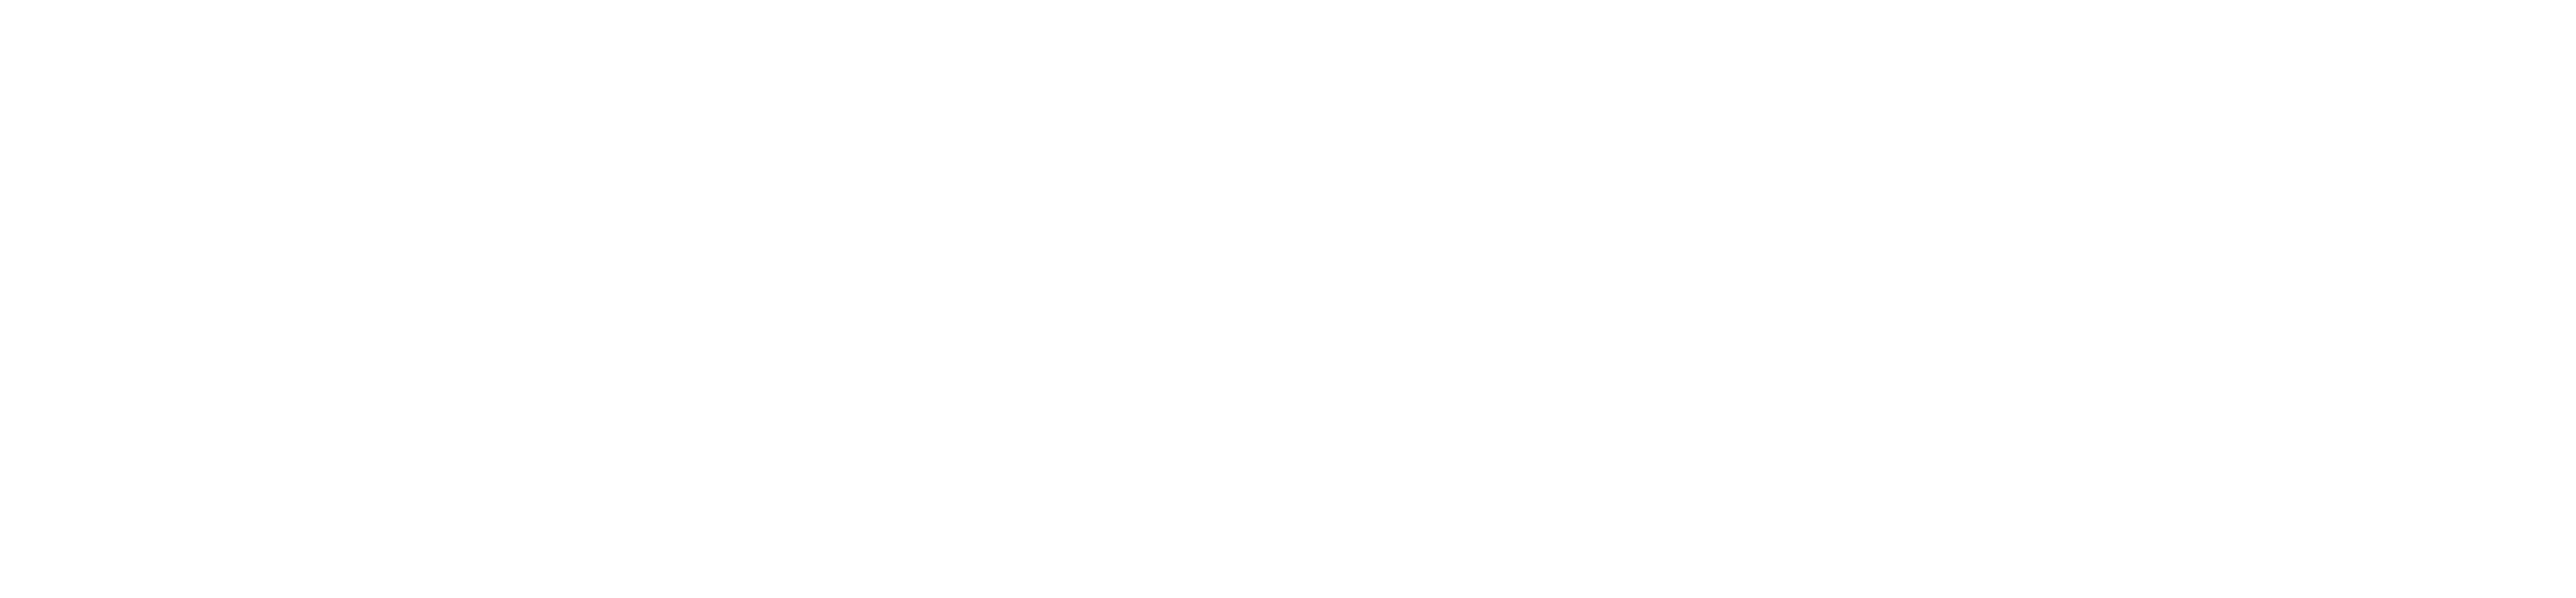 Observatorio Económico de Turismo de Reuniones de la República Argentina